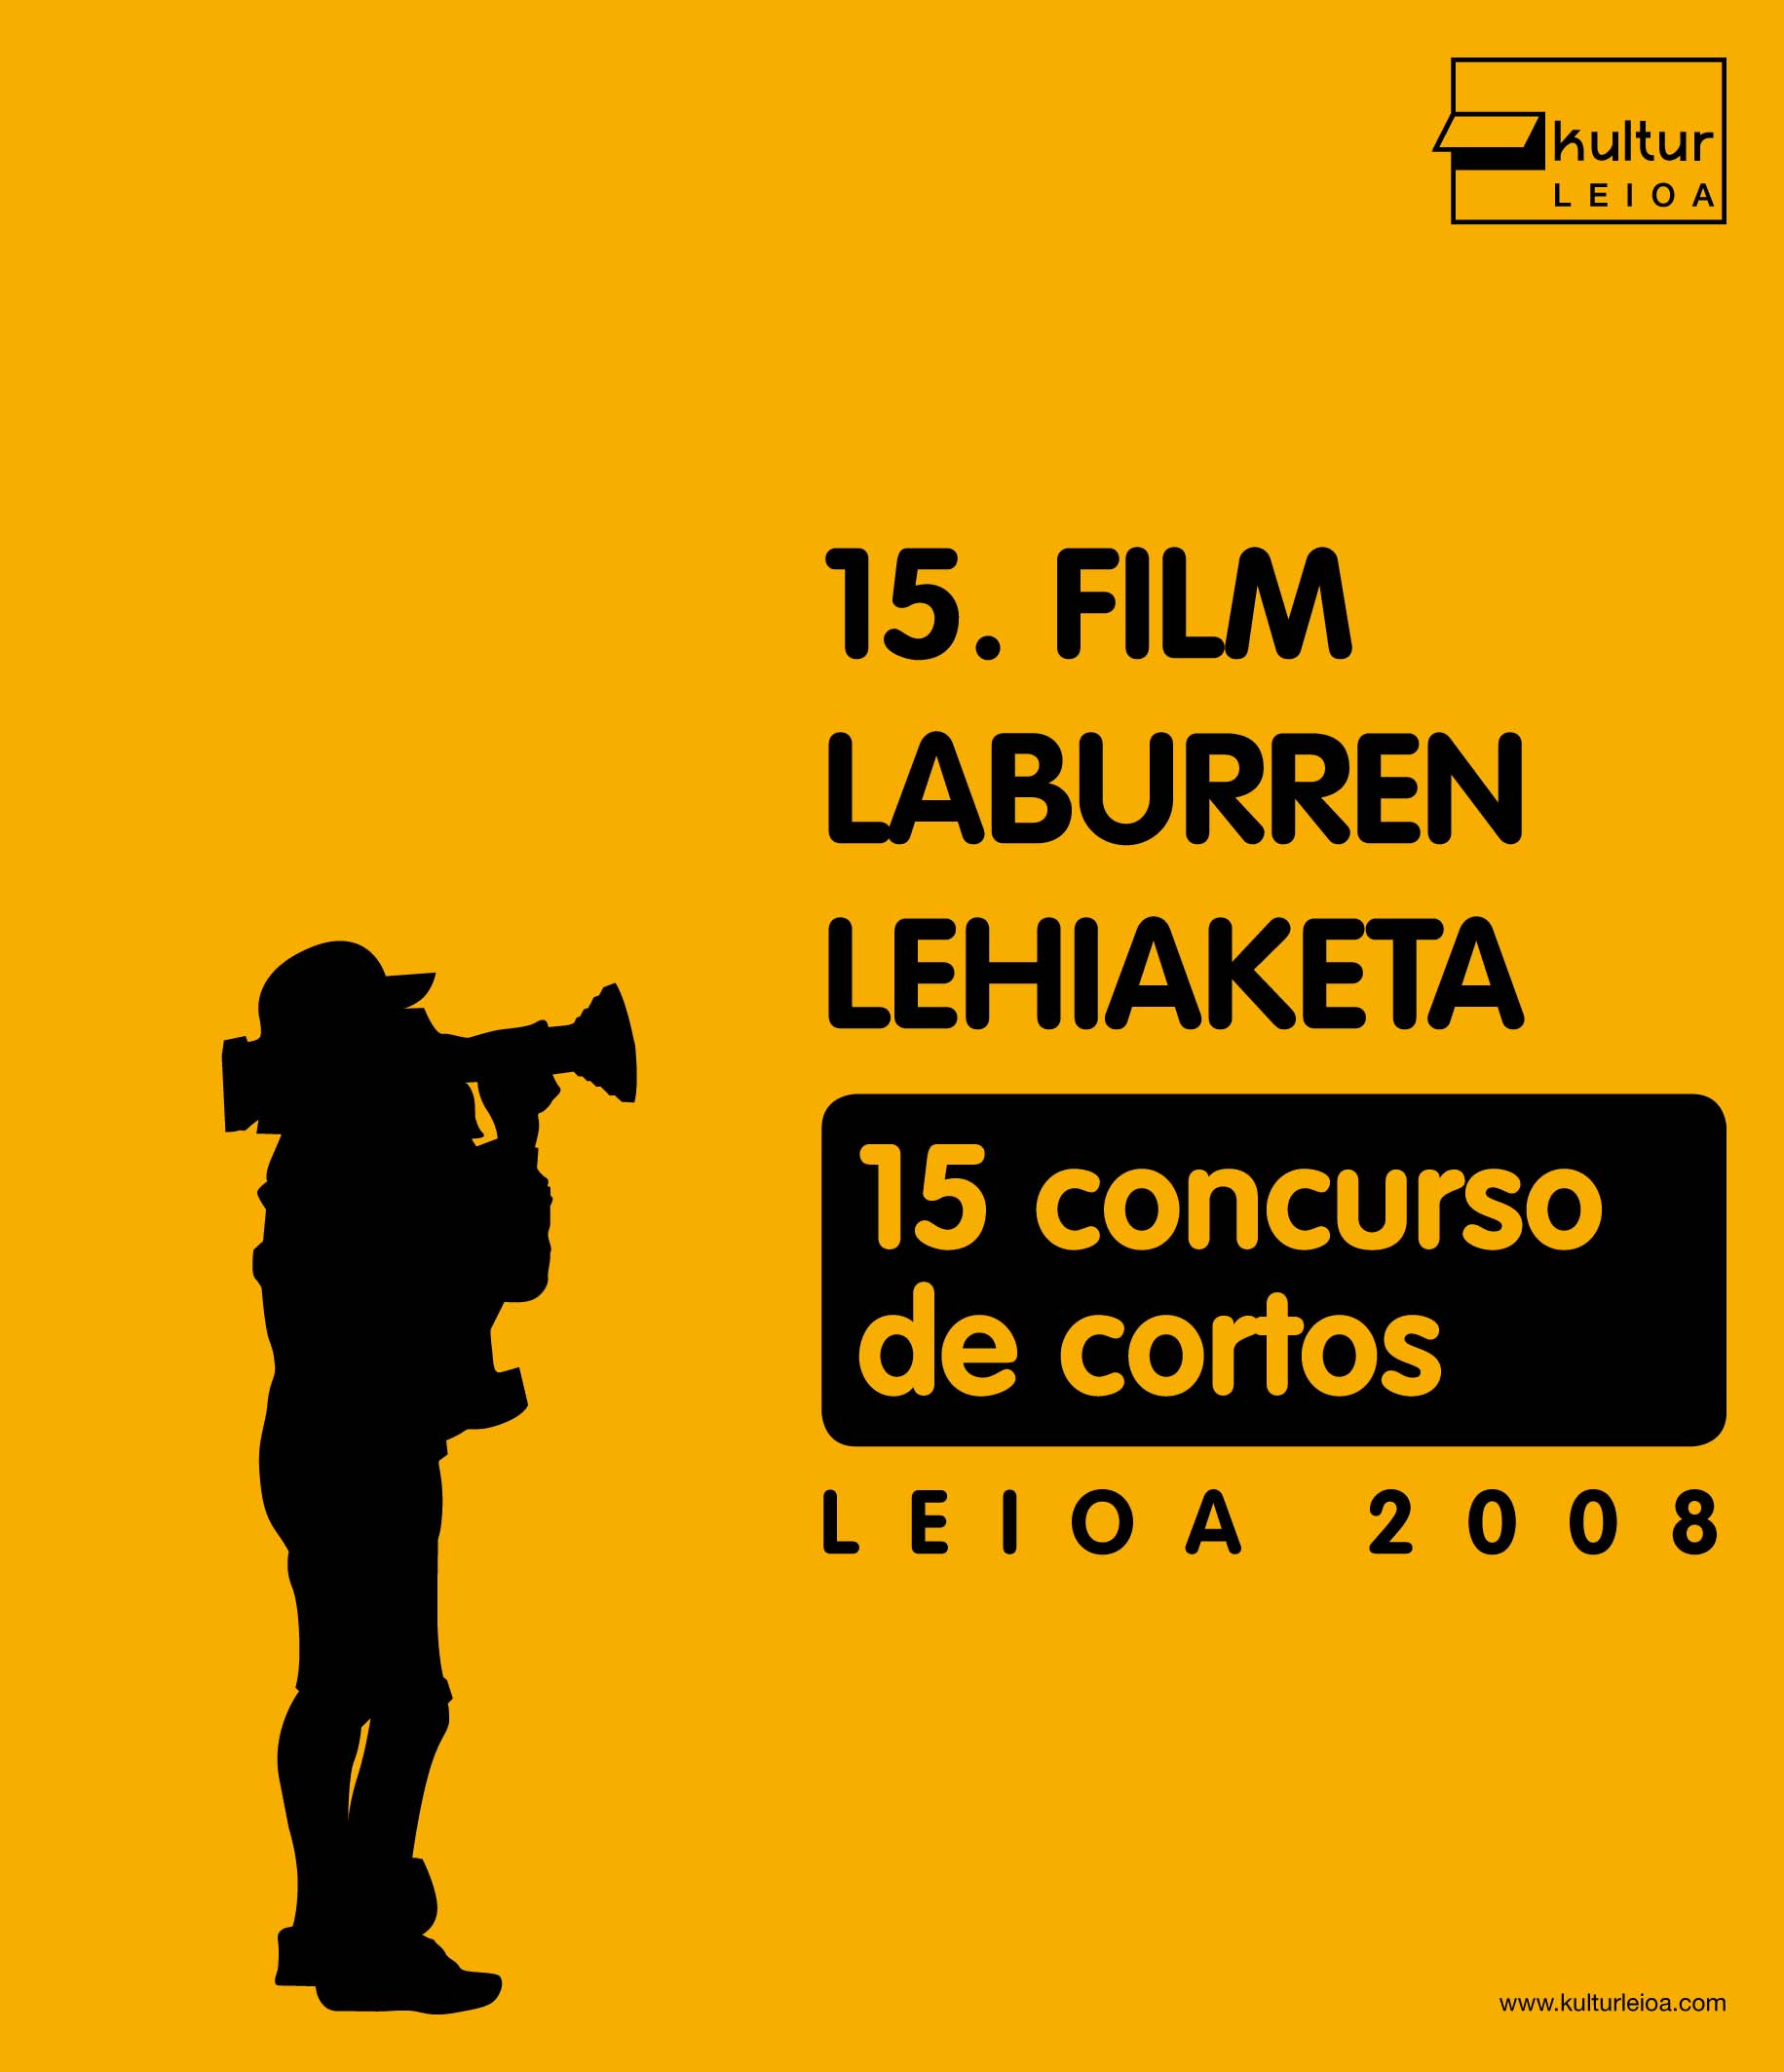 15 concurso de cortos / 15 film laburren lehiaketa